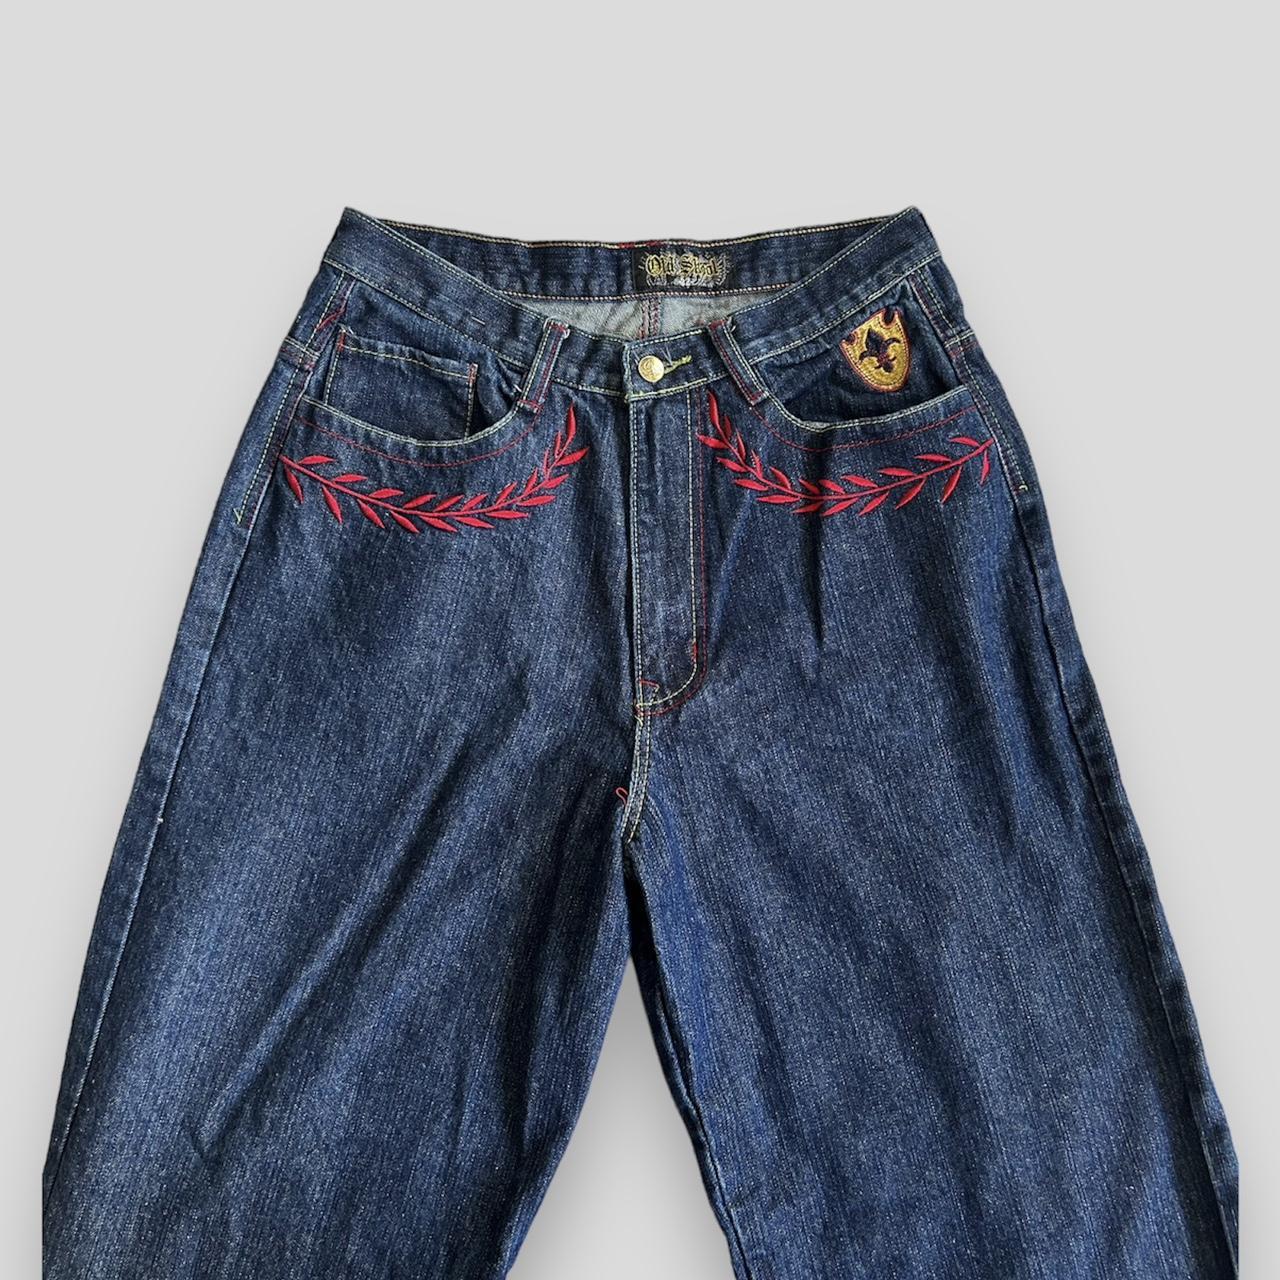 Old Skool jeans details -size 32 -waist... - Depop